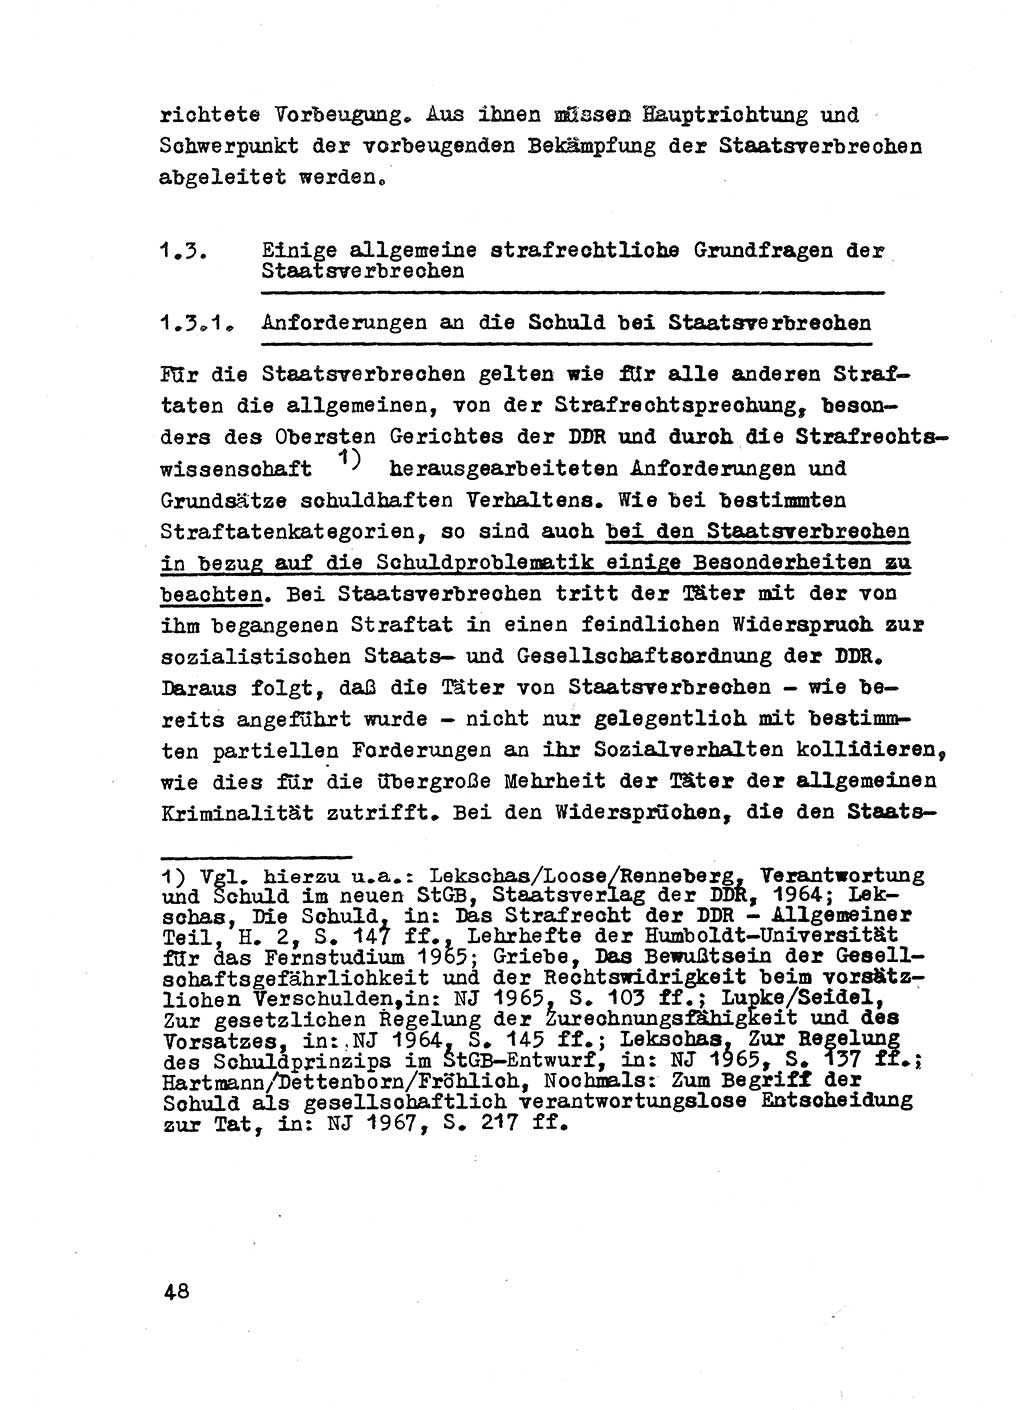 Strafrecht der DDR (Deutsche Demokratische Republik), Besonderer Teil, Lehrmaterial, Heft 2 1969, Seite 48 (Strafr. DDR BT Lehrmat. H. 2 1969, S. 48)